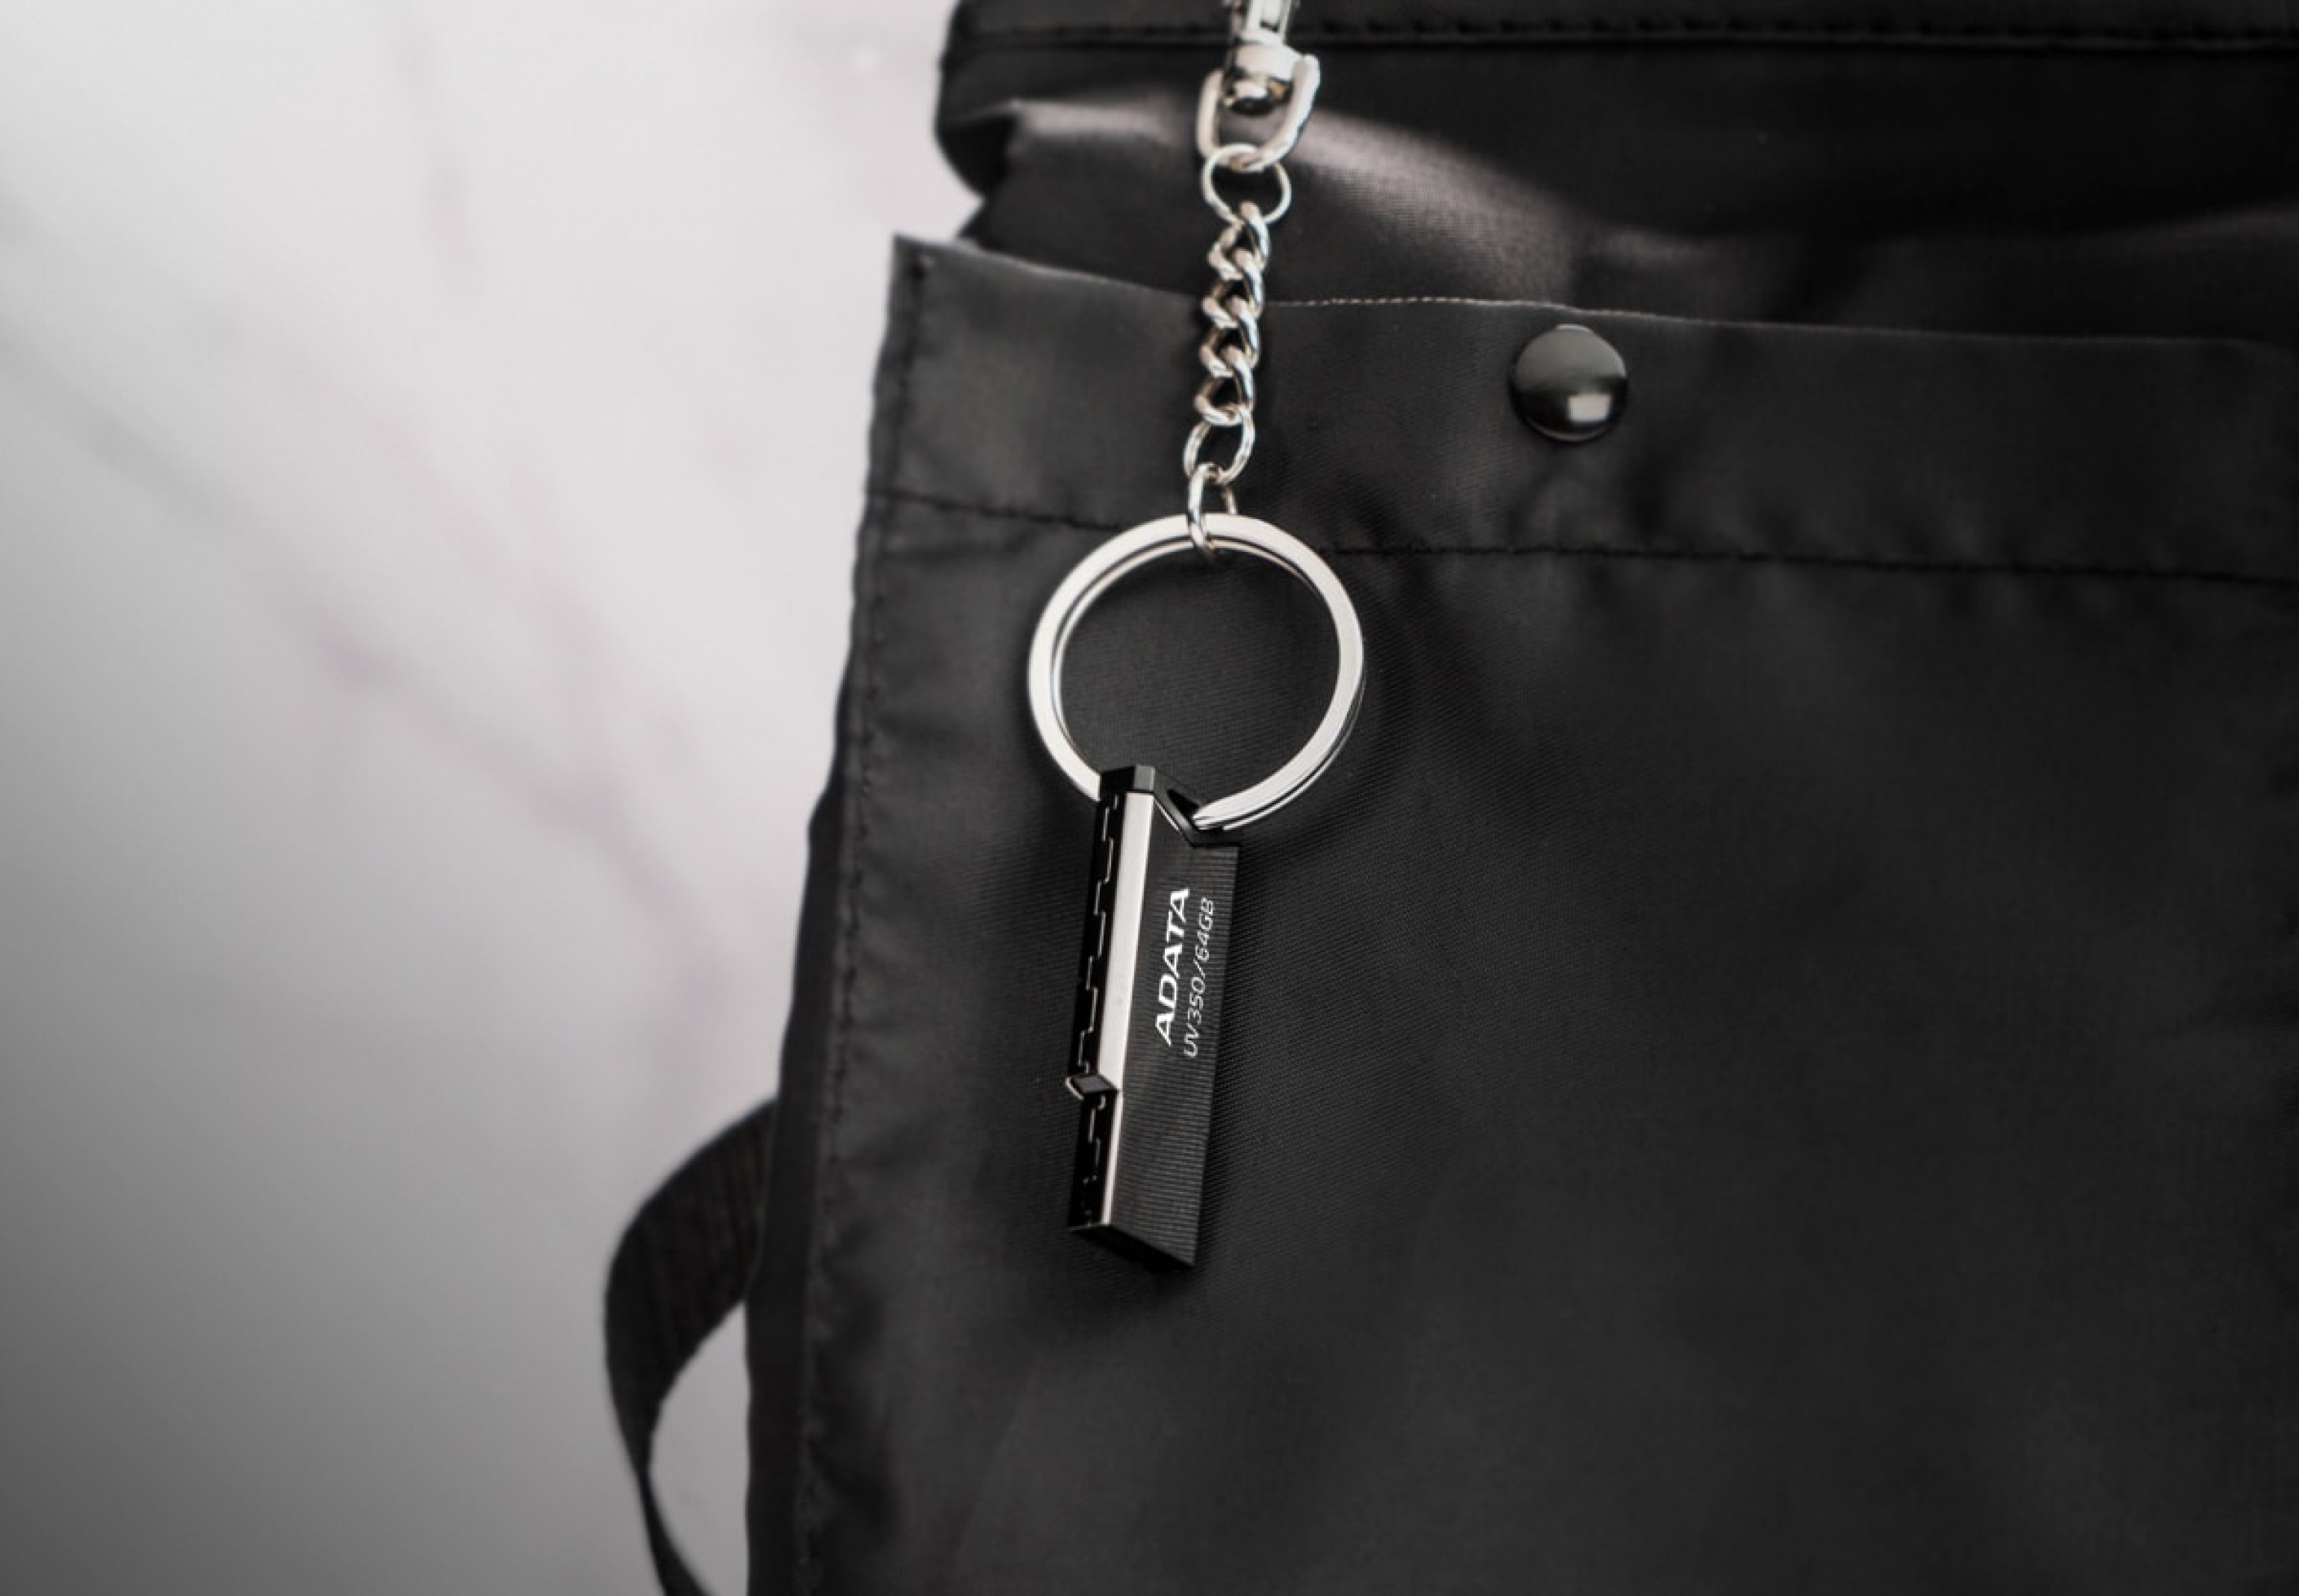 Flashdisk Adata UV350 má otvor pro poutko pro zavěšení na klíče či na cestovní batoh!